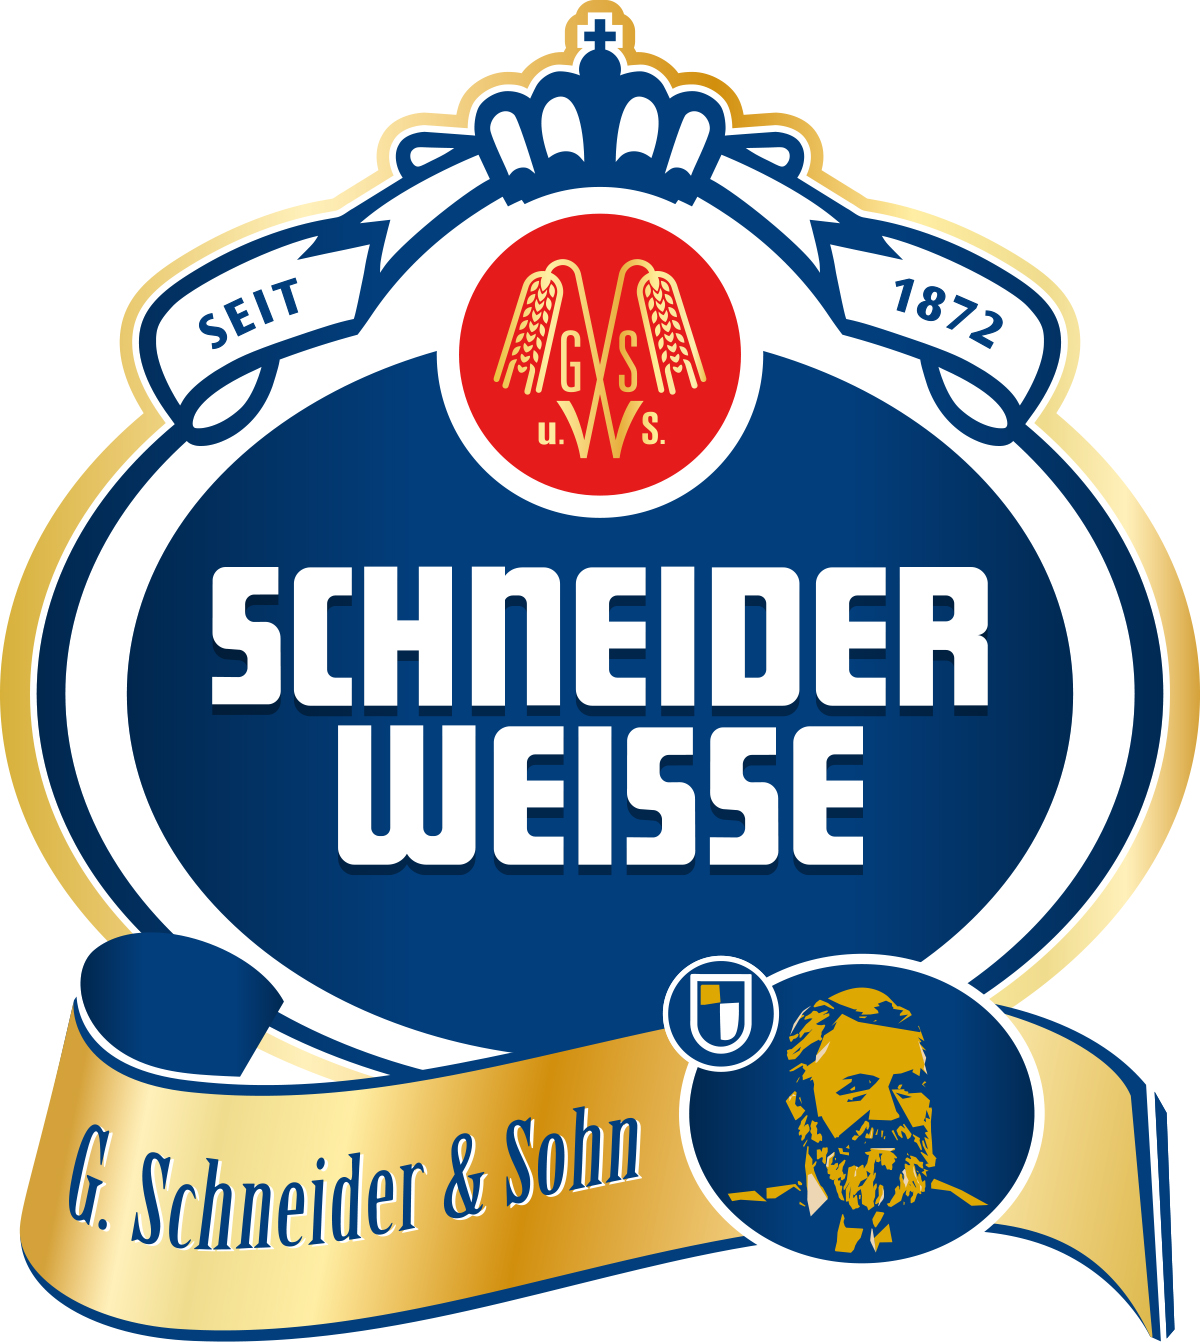 Schneider Weisse Original Tap 7 Fust 50 ltr 5,4%